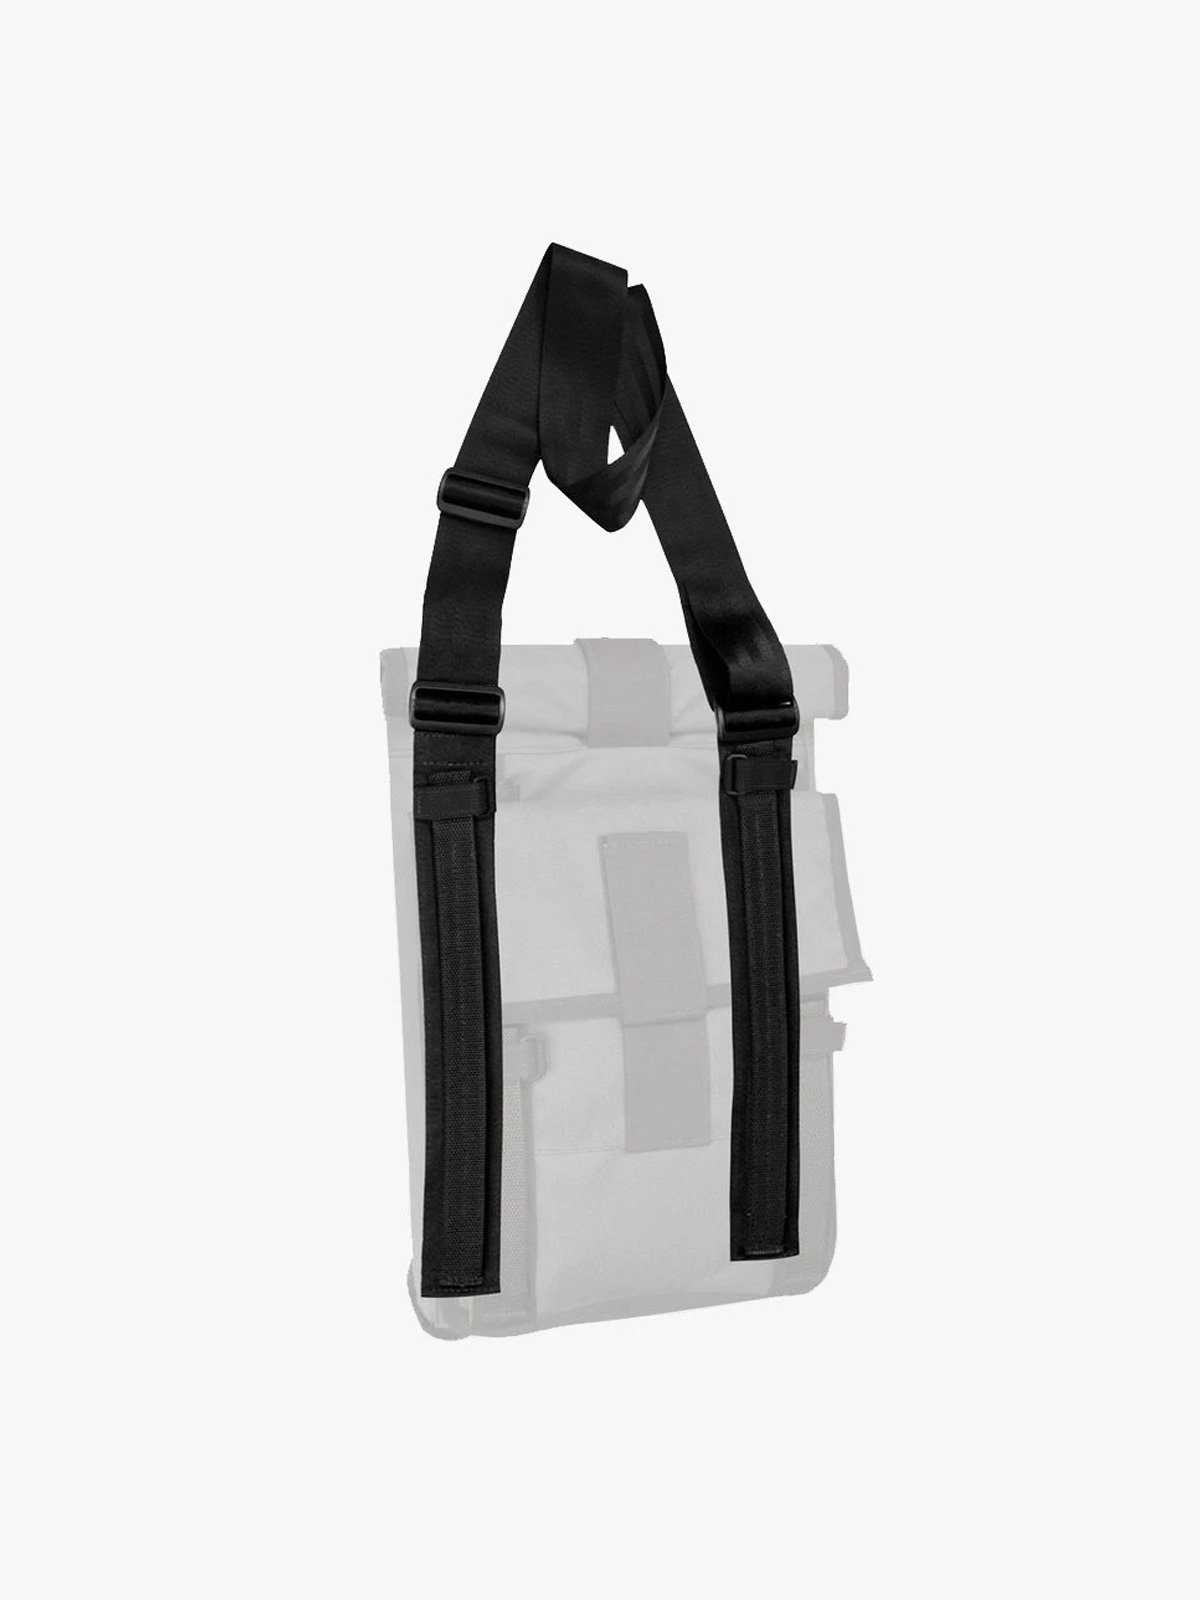 Arkiv Shoulder Strap by Mission Workshop - Weatherproof Bags & Technical Apparel - San Francisco & Los Angeles - Construit pour durer - Garanti pour toujours